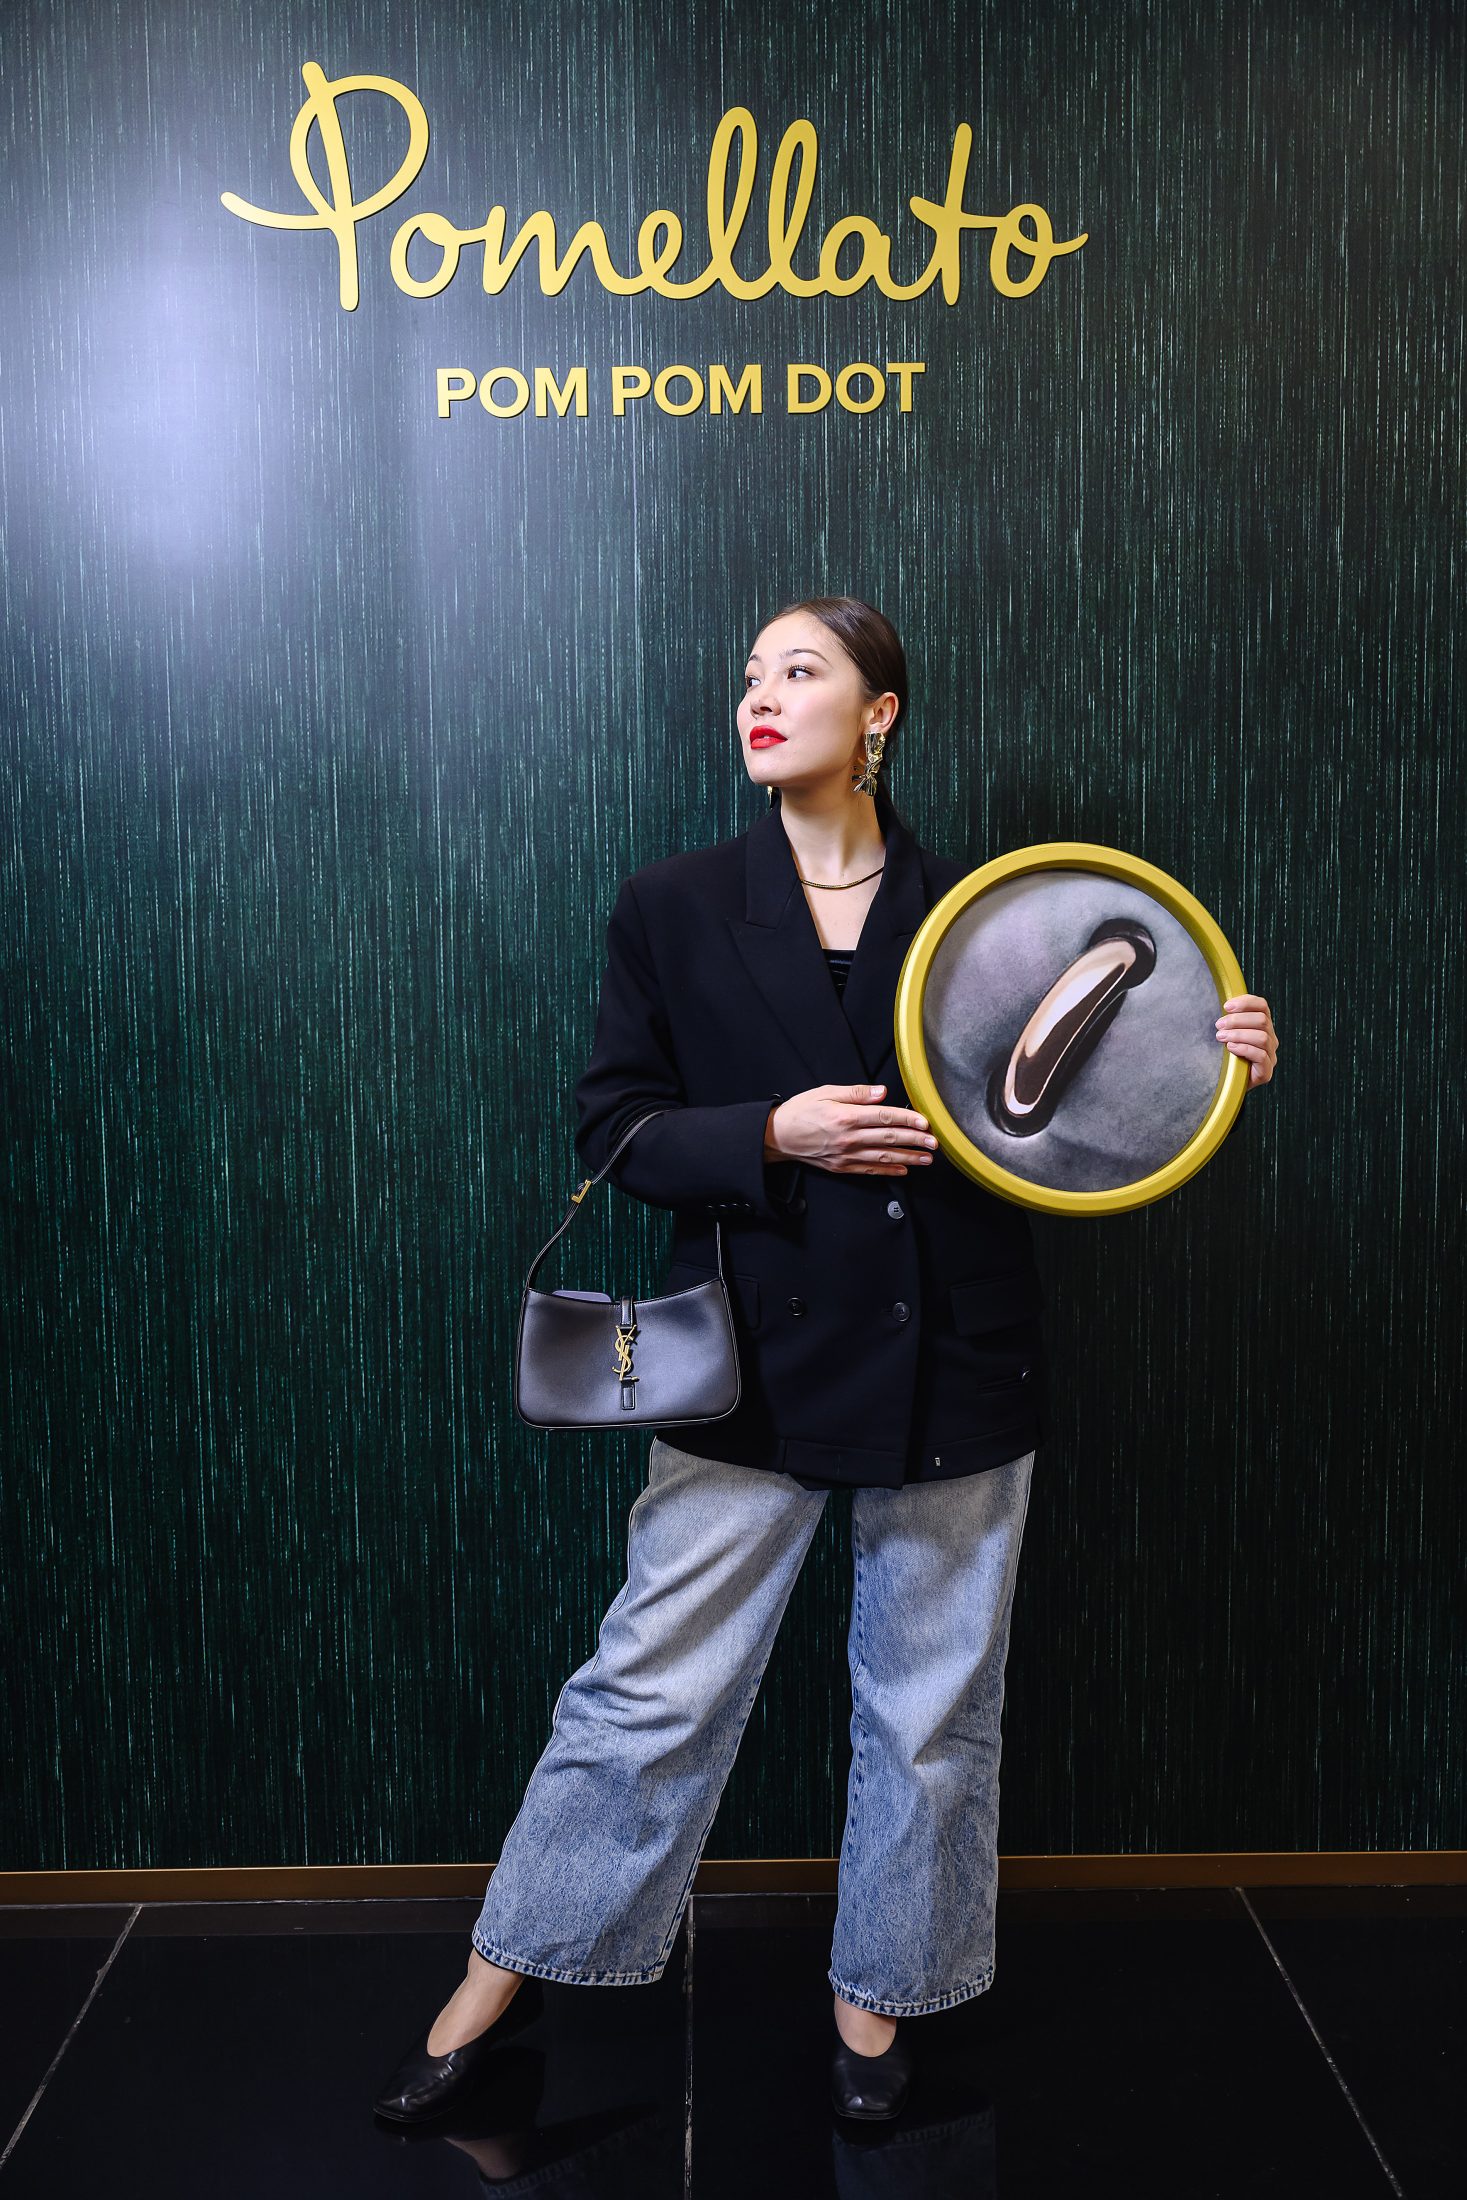 Пуговка на счастье: запуск новой линии украшений Pomellato Pom Pom Dot